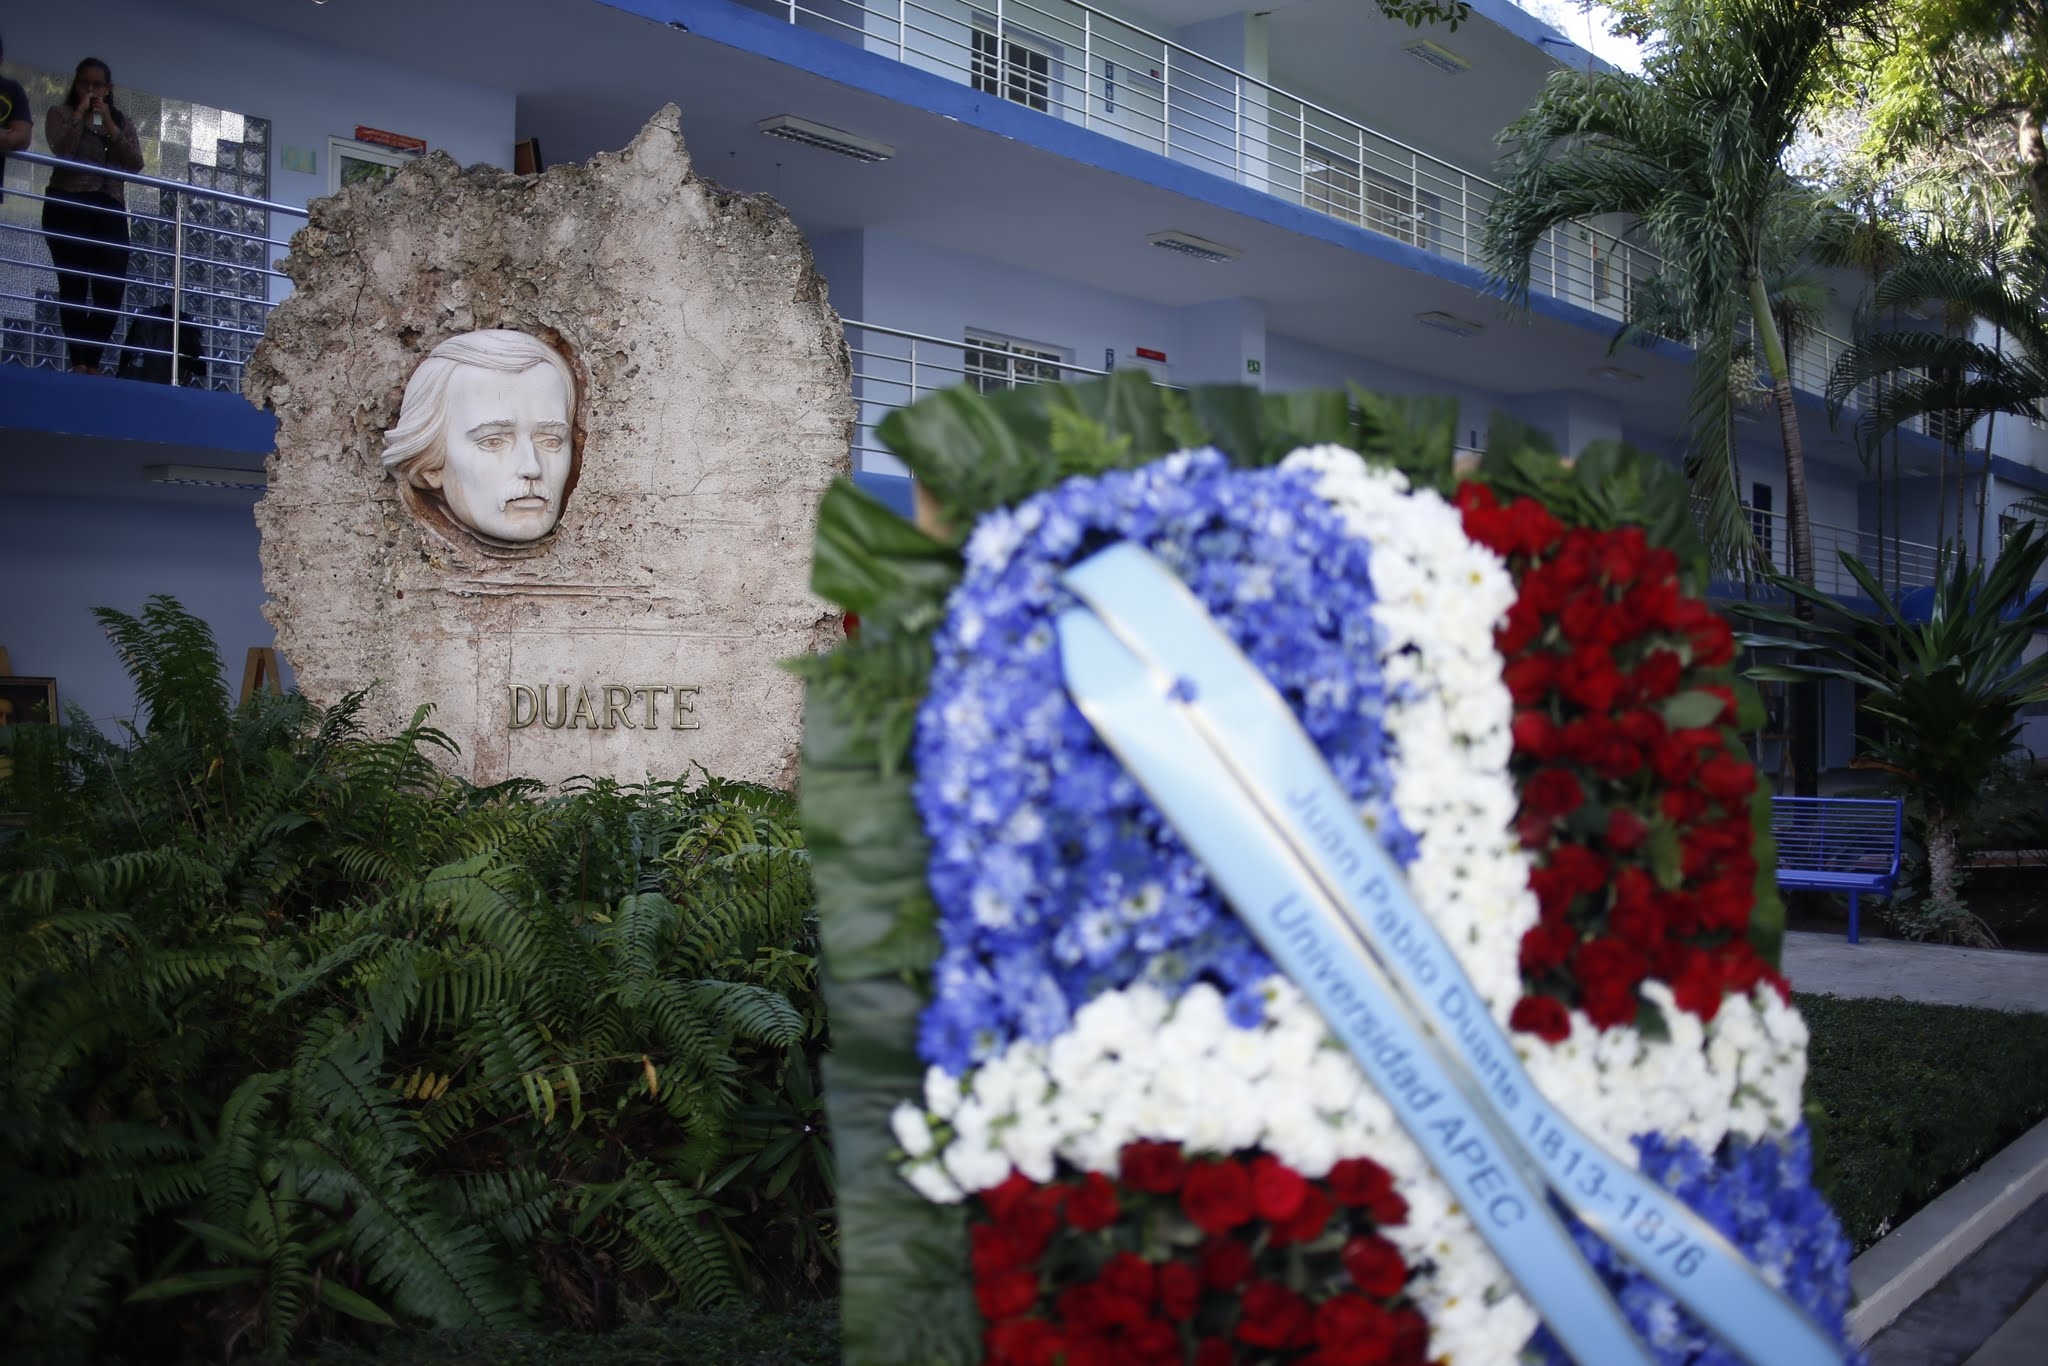 Colaboradores de UNAPEC realizaron una ofrenda floral en el busto de Duarte de UNAPEC.